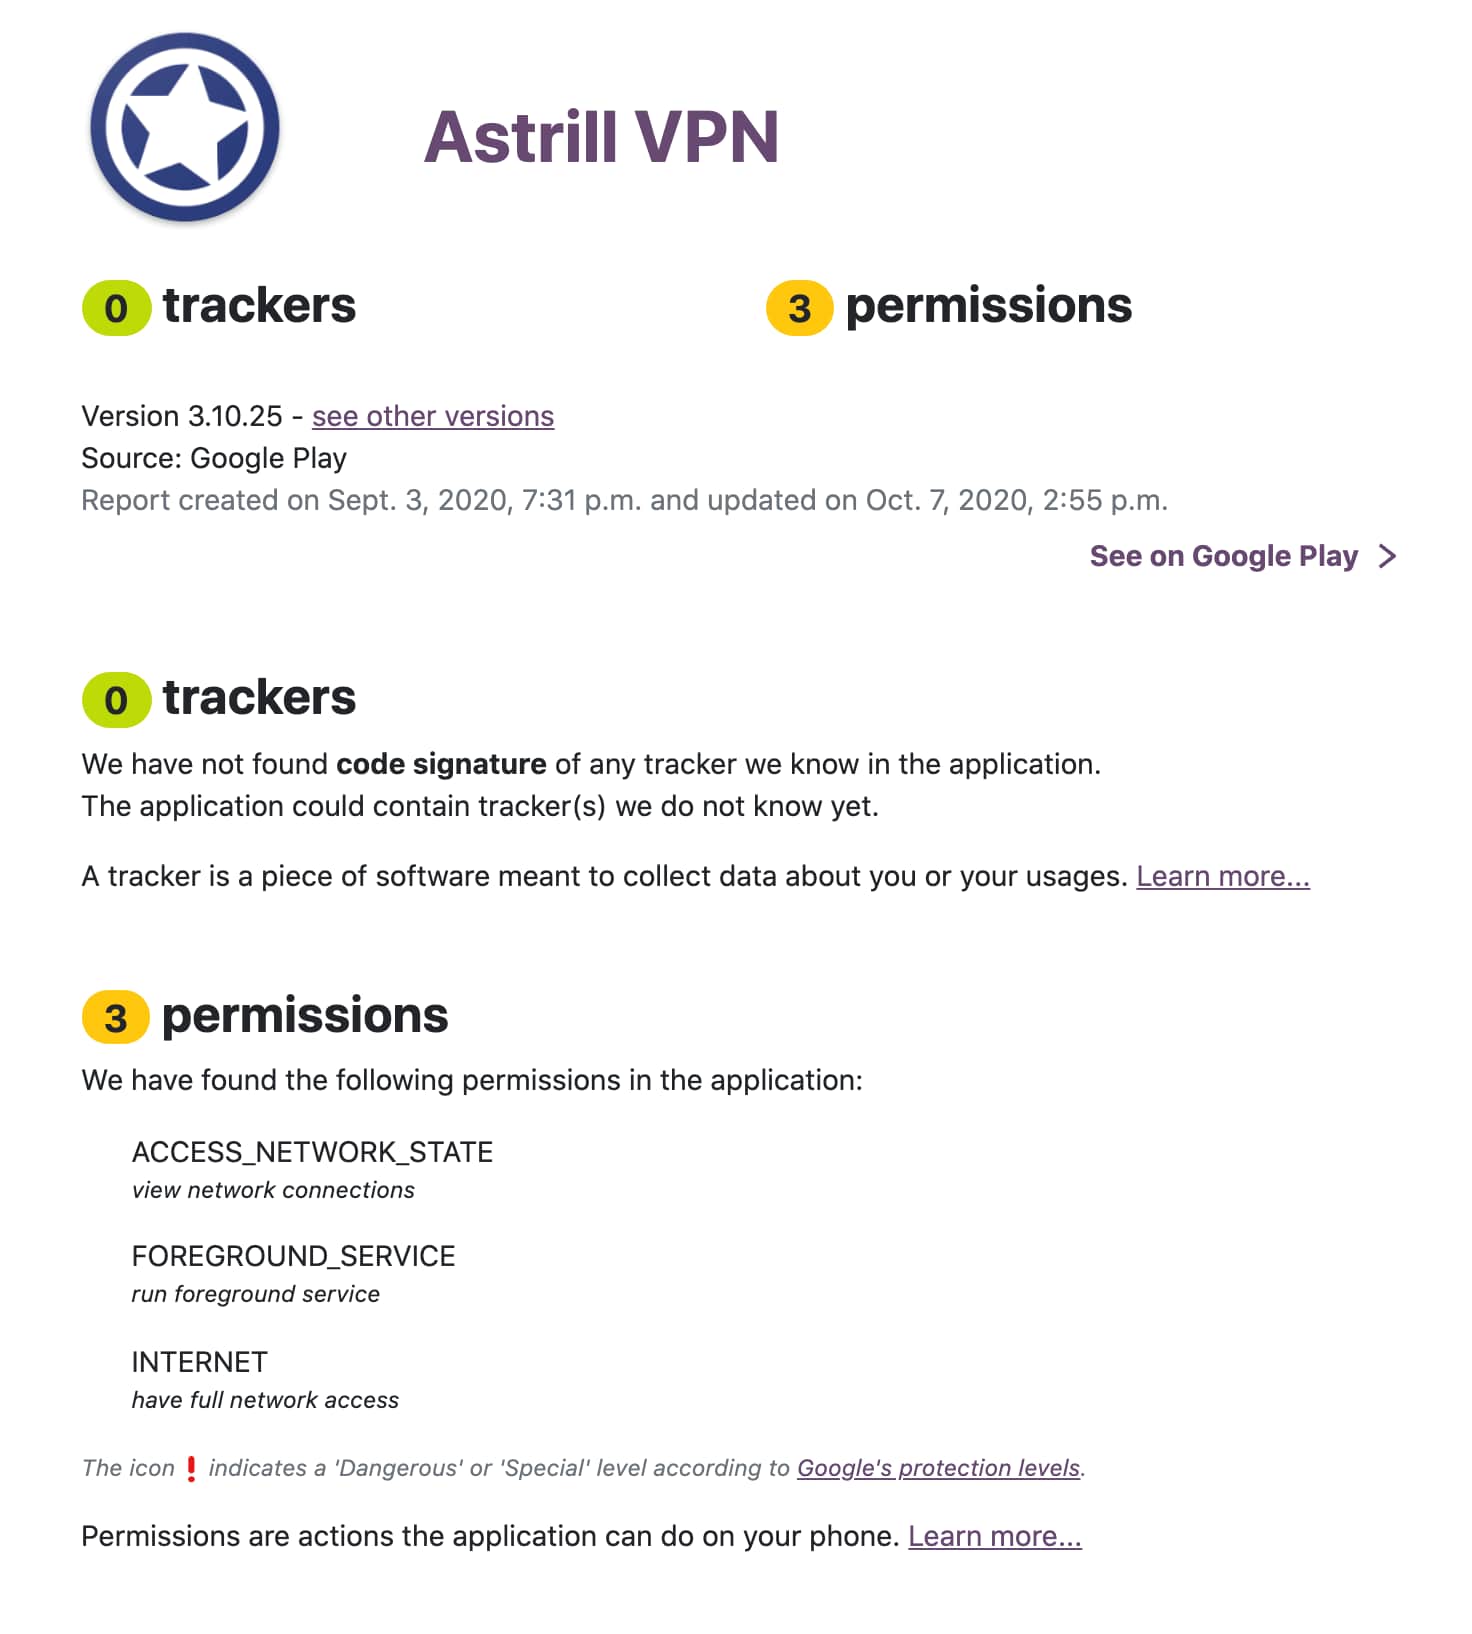 Los permisos que Astrill VPN require en Android